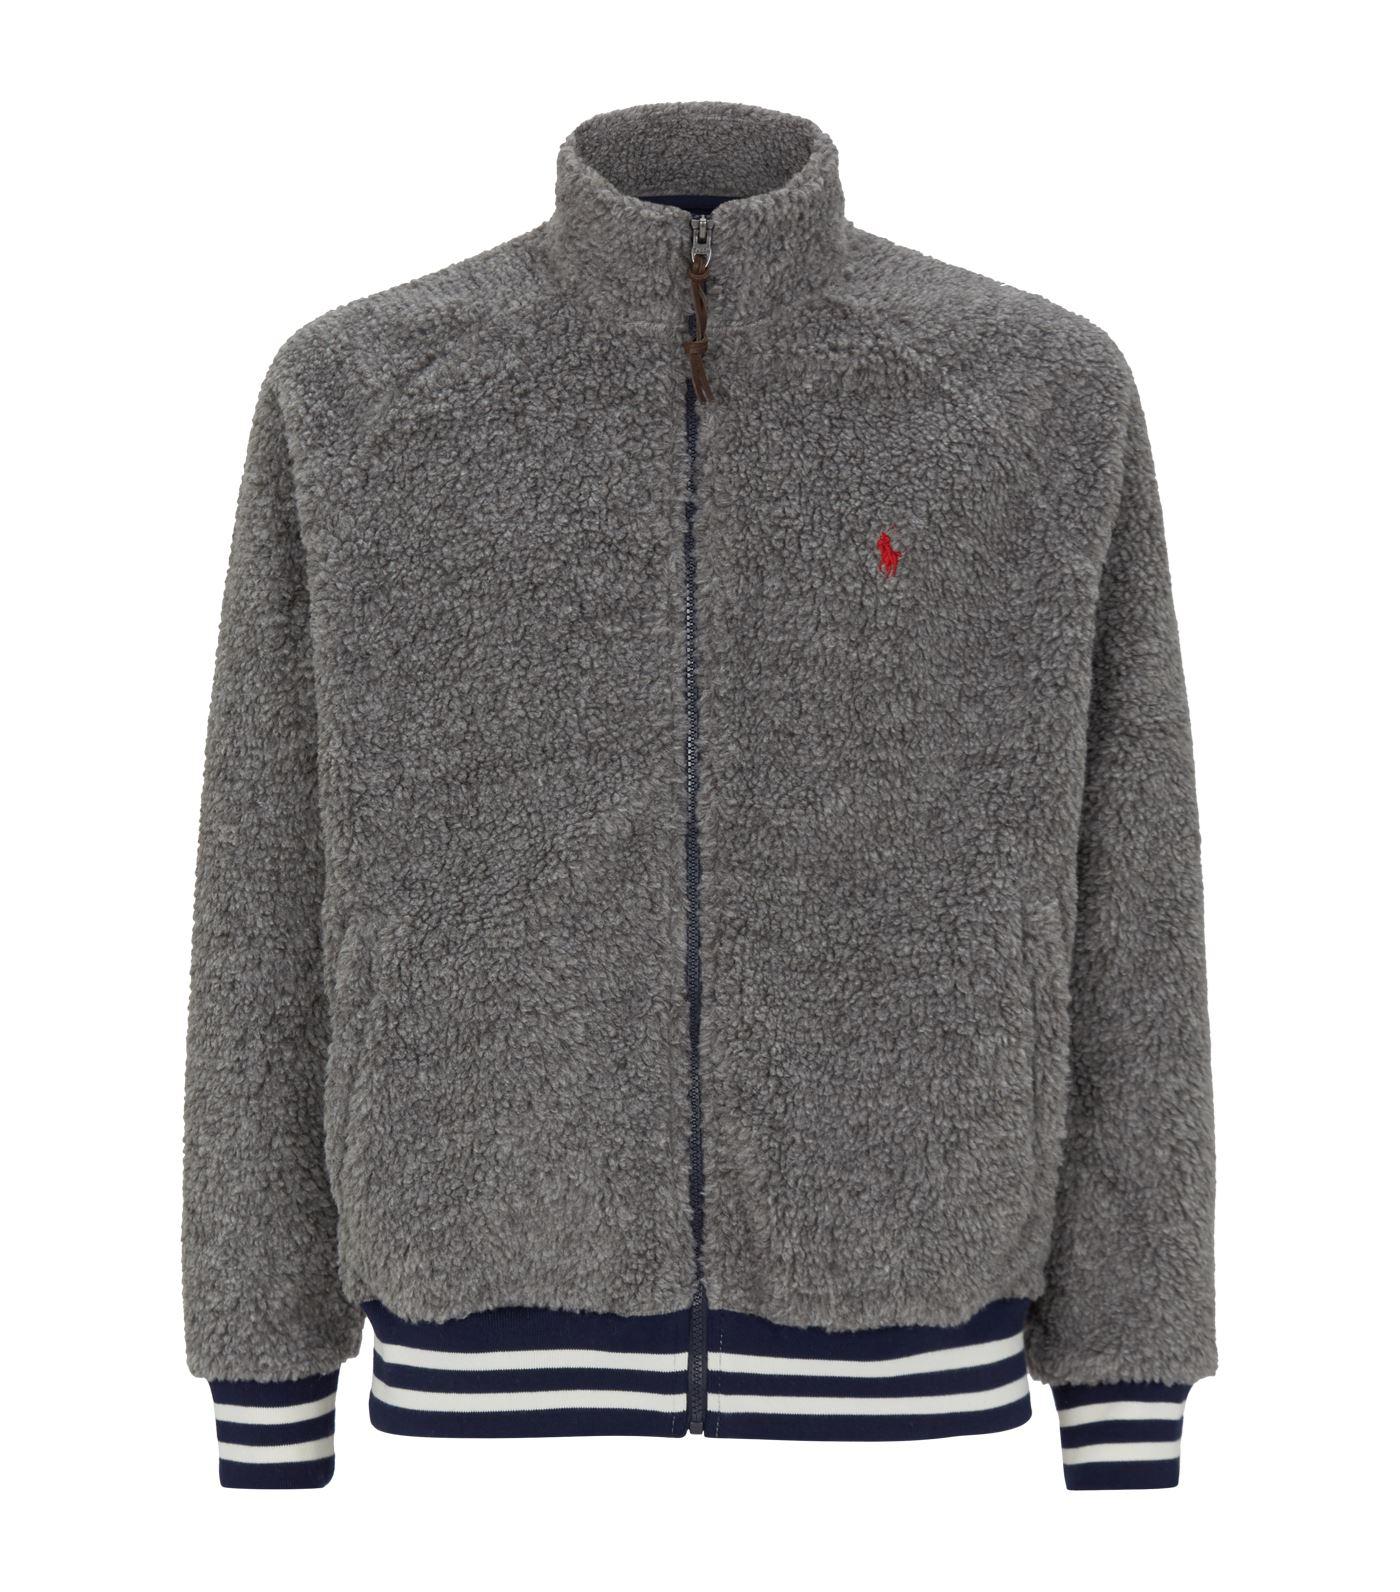 Lyst - Polo Ralph Lauren Fleece Jacket in Gray for Men - Save 14%